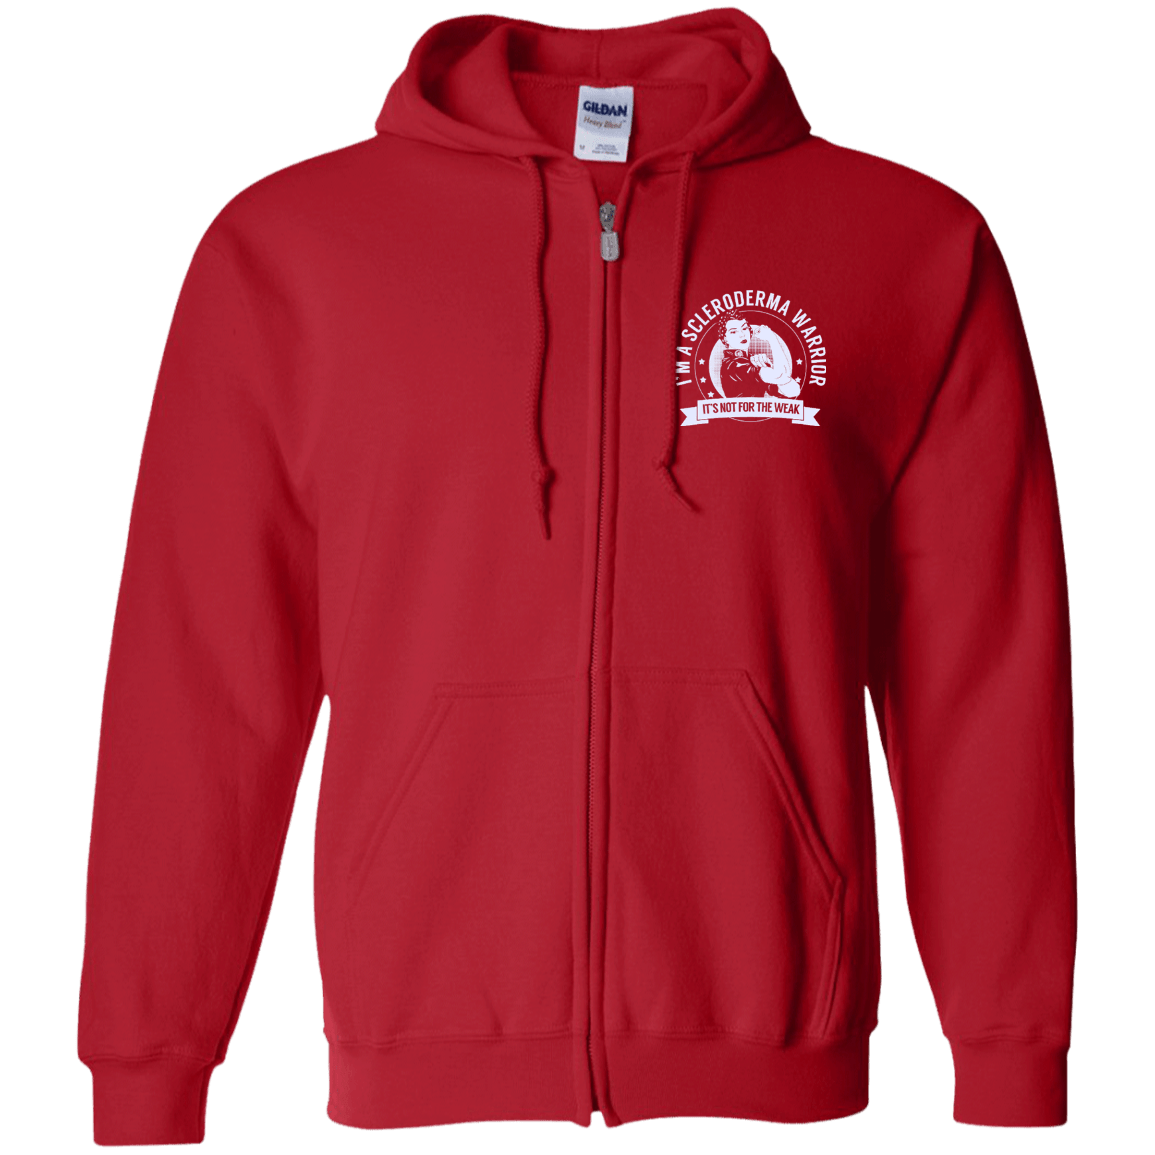 Scleroderma Warrior NFTW Zip Up Hooded Sweatshirt - The Unchargeables